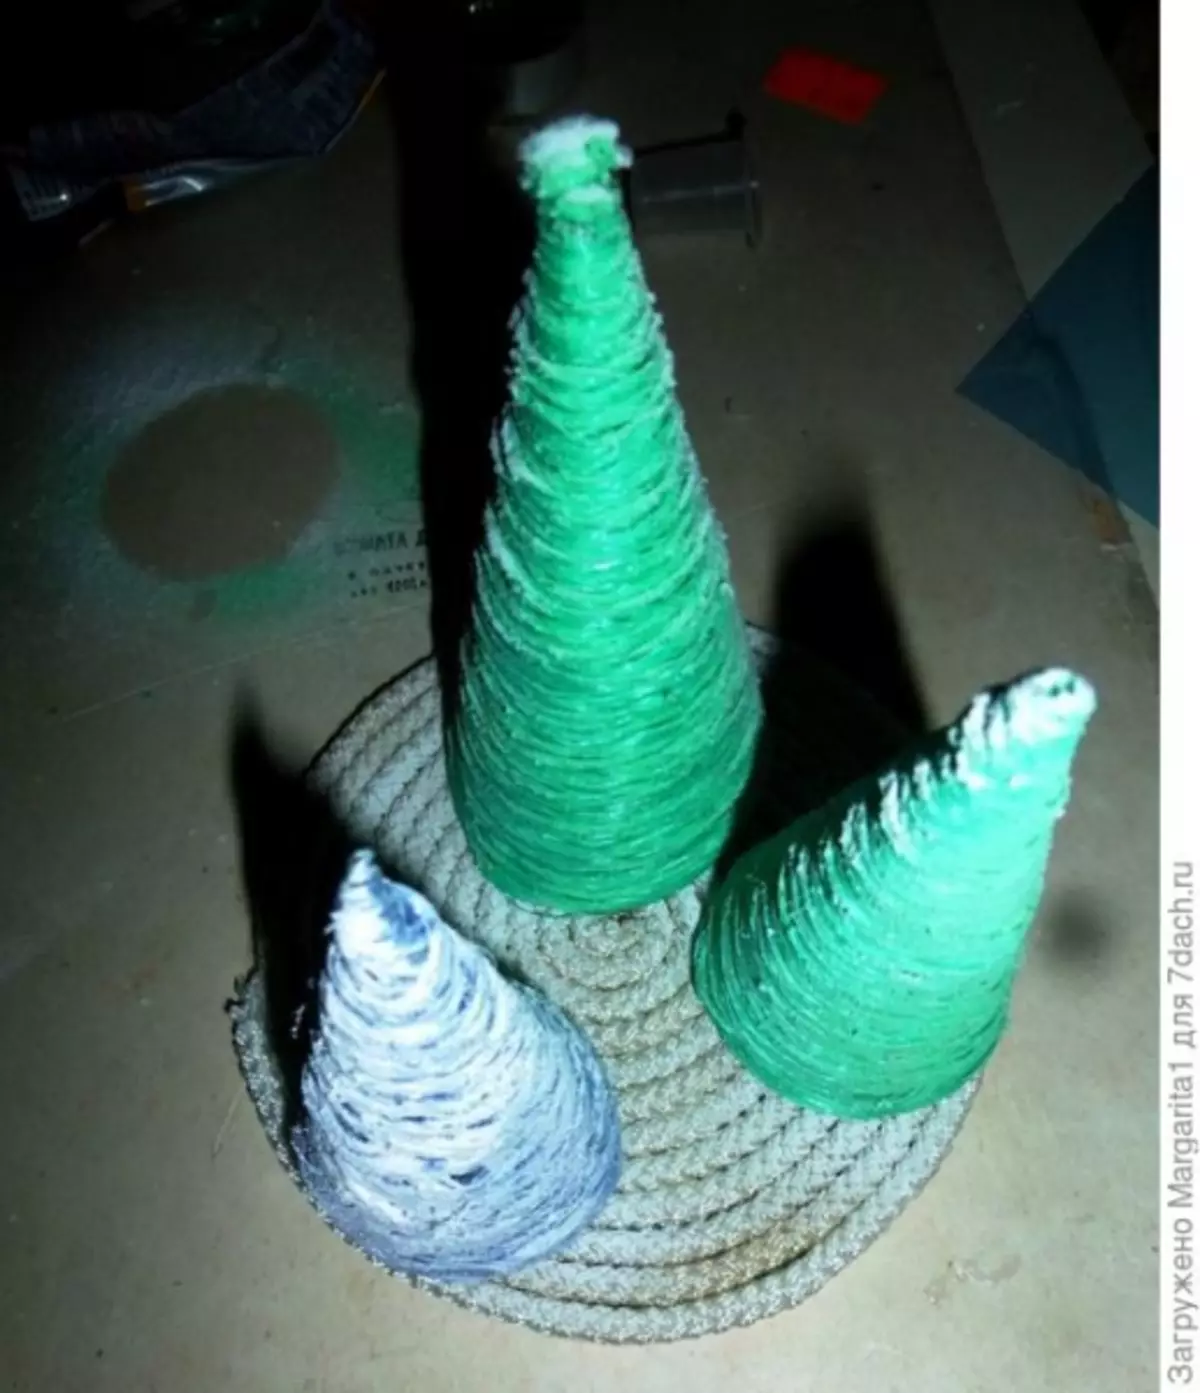 Farklı malzemelerden gelen Noel ağaçlarının imalatındaki ana sınıf